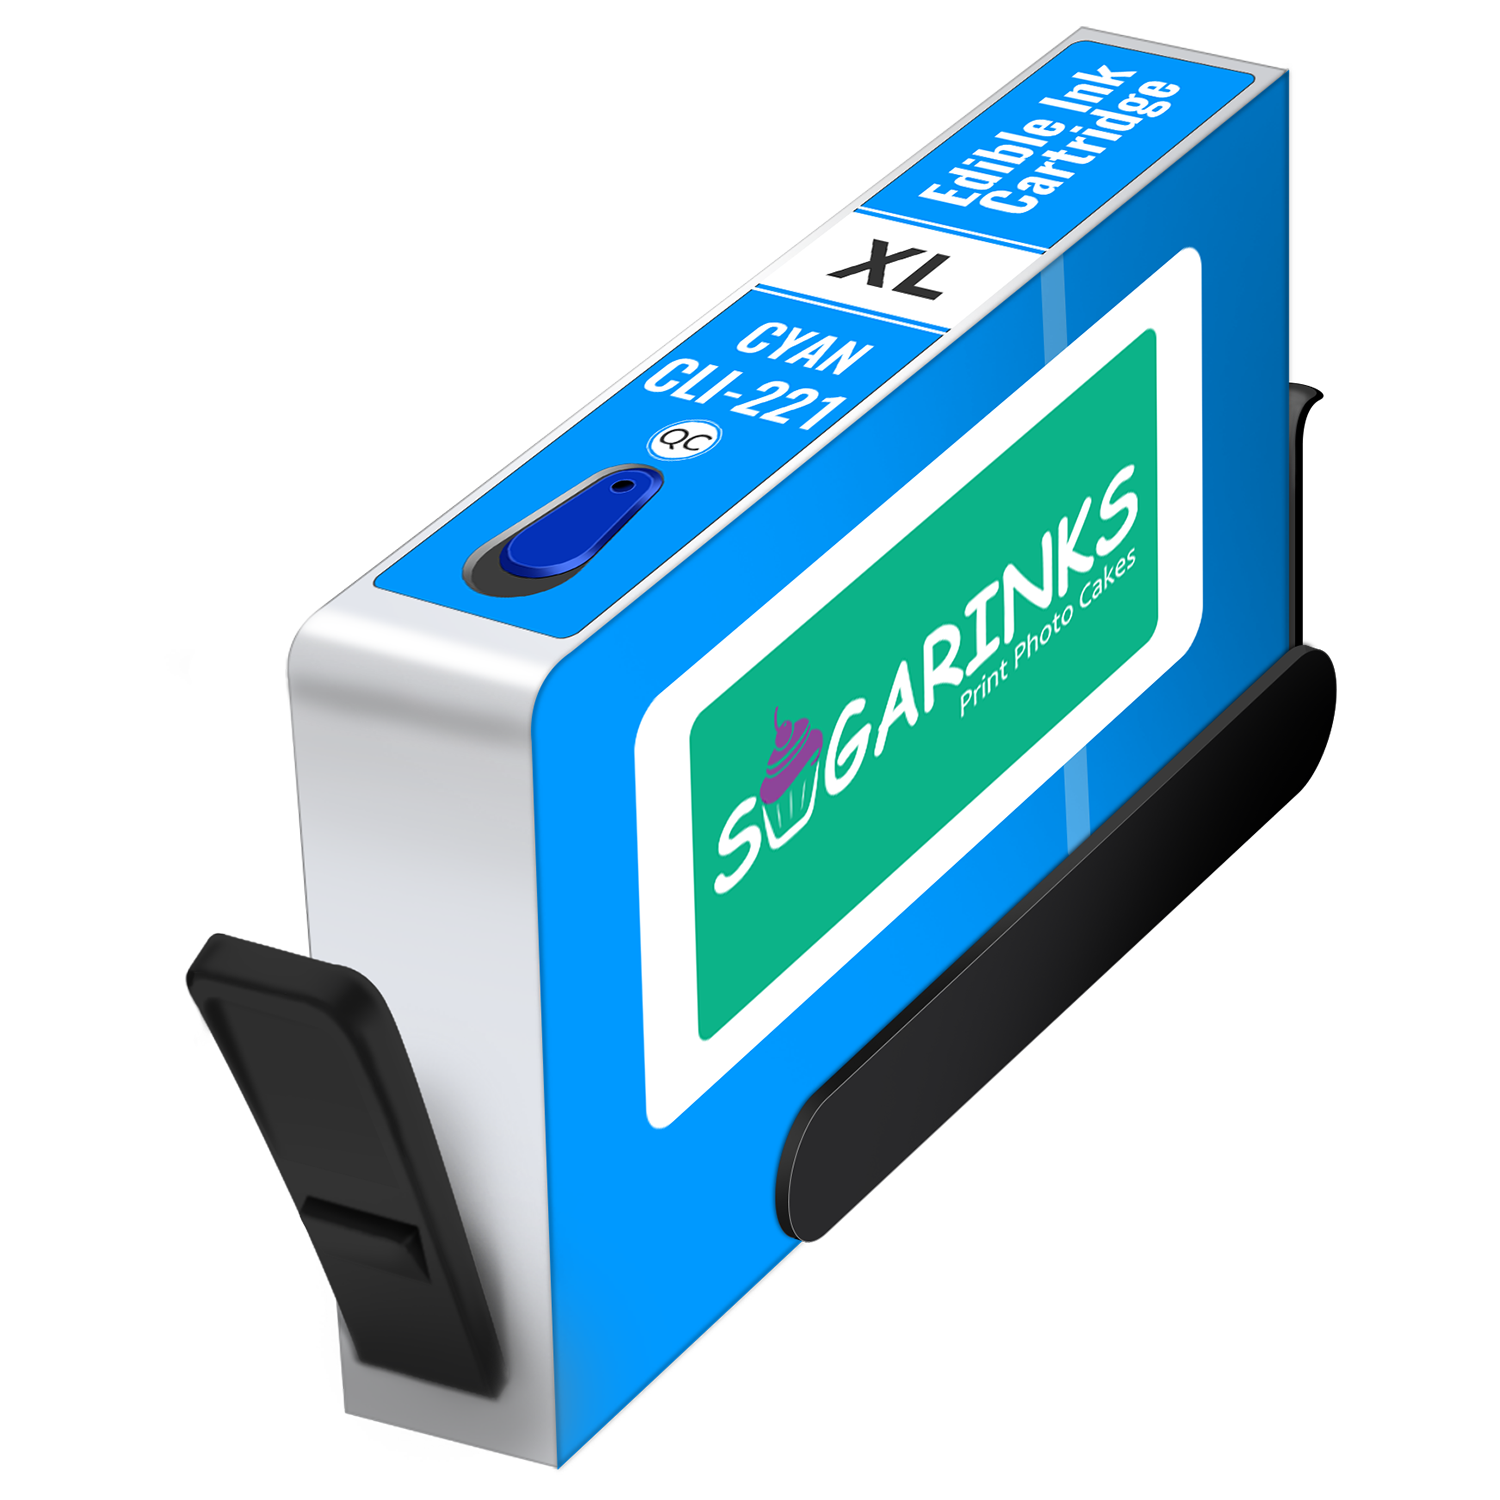 Sugarinks Edible Ink Cartridge CLI-221C for Canon Edible Printers – Cyan